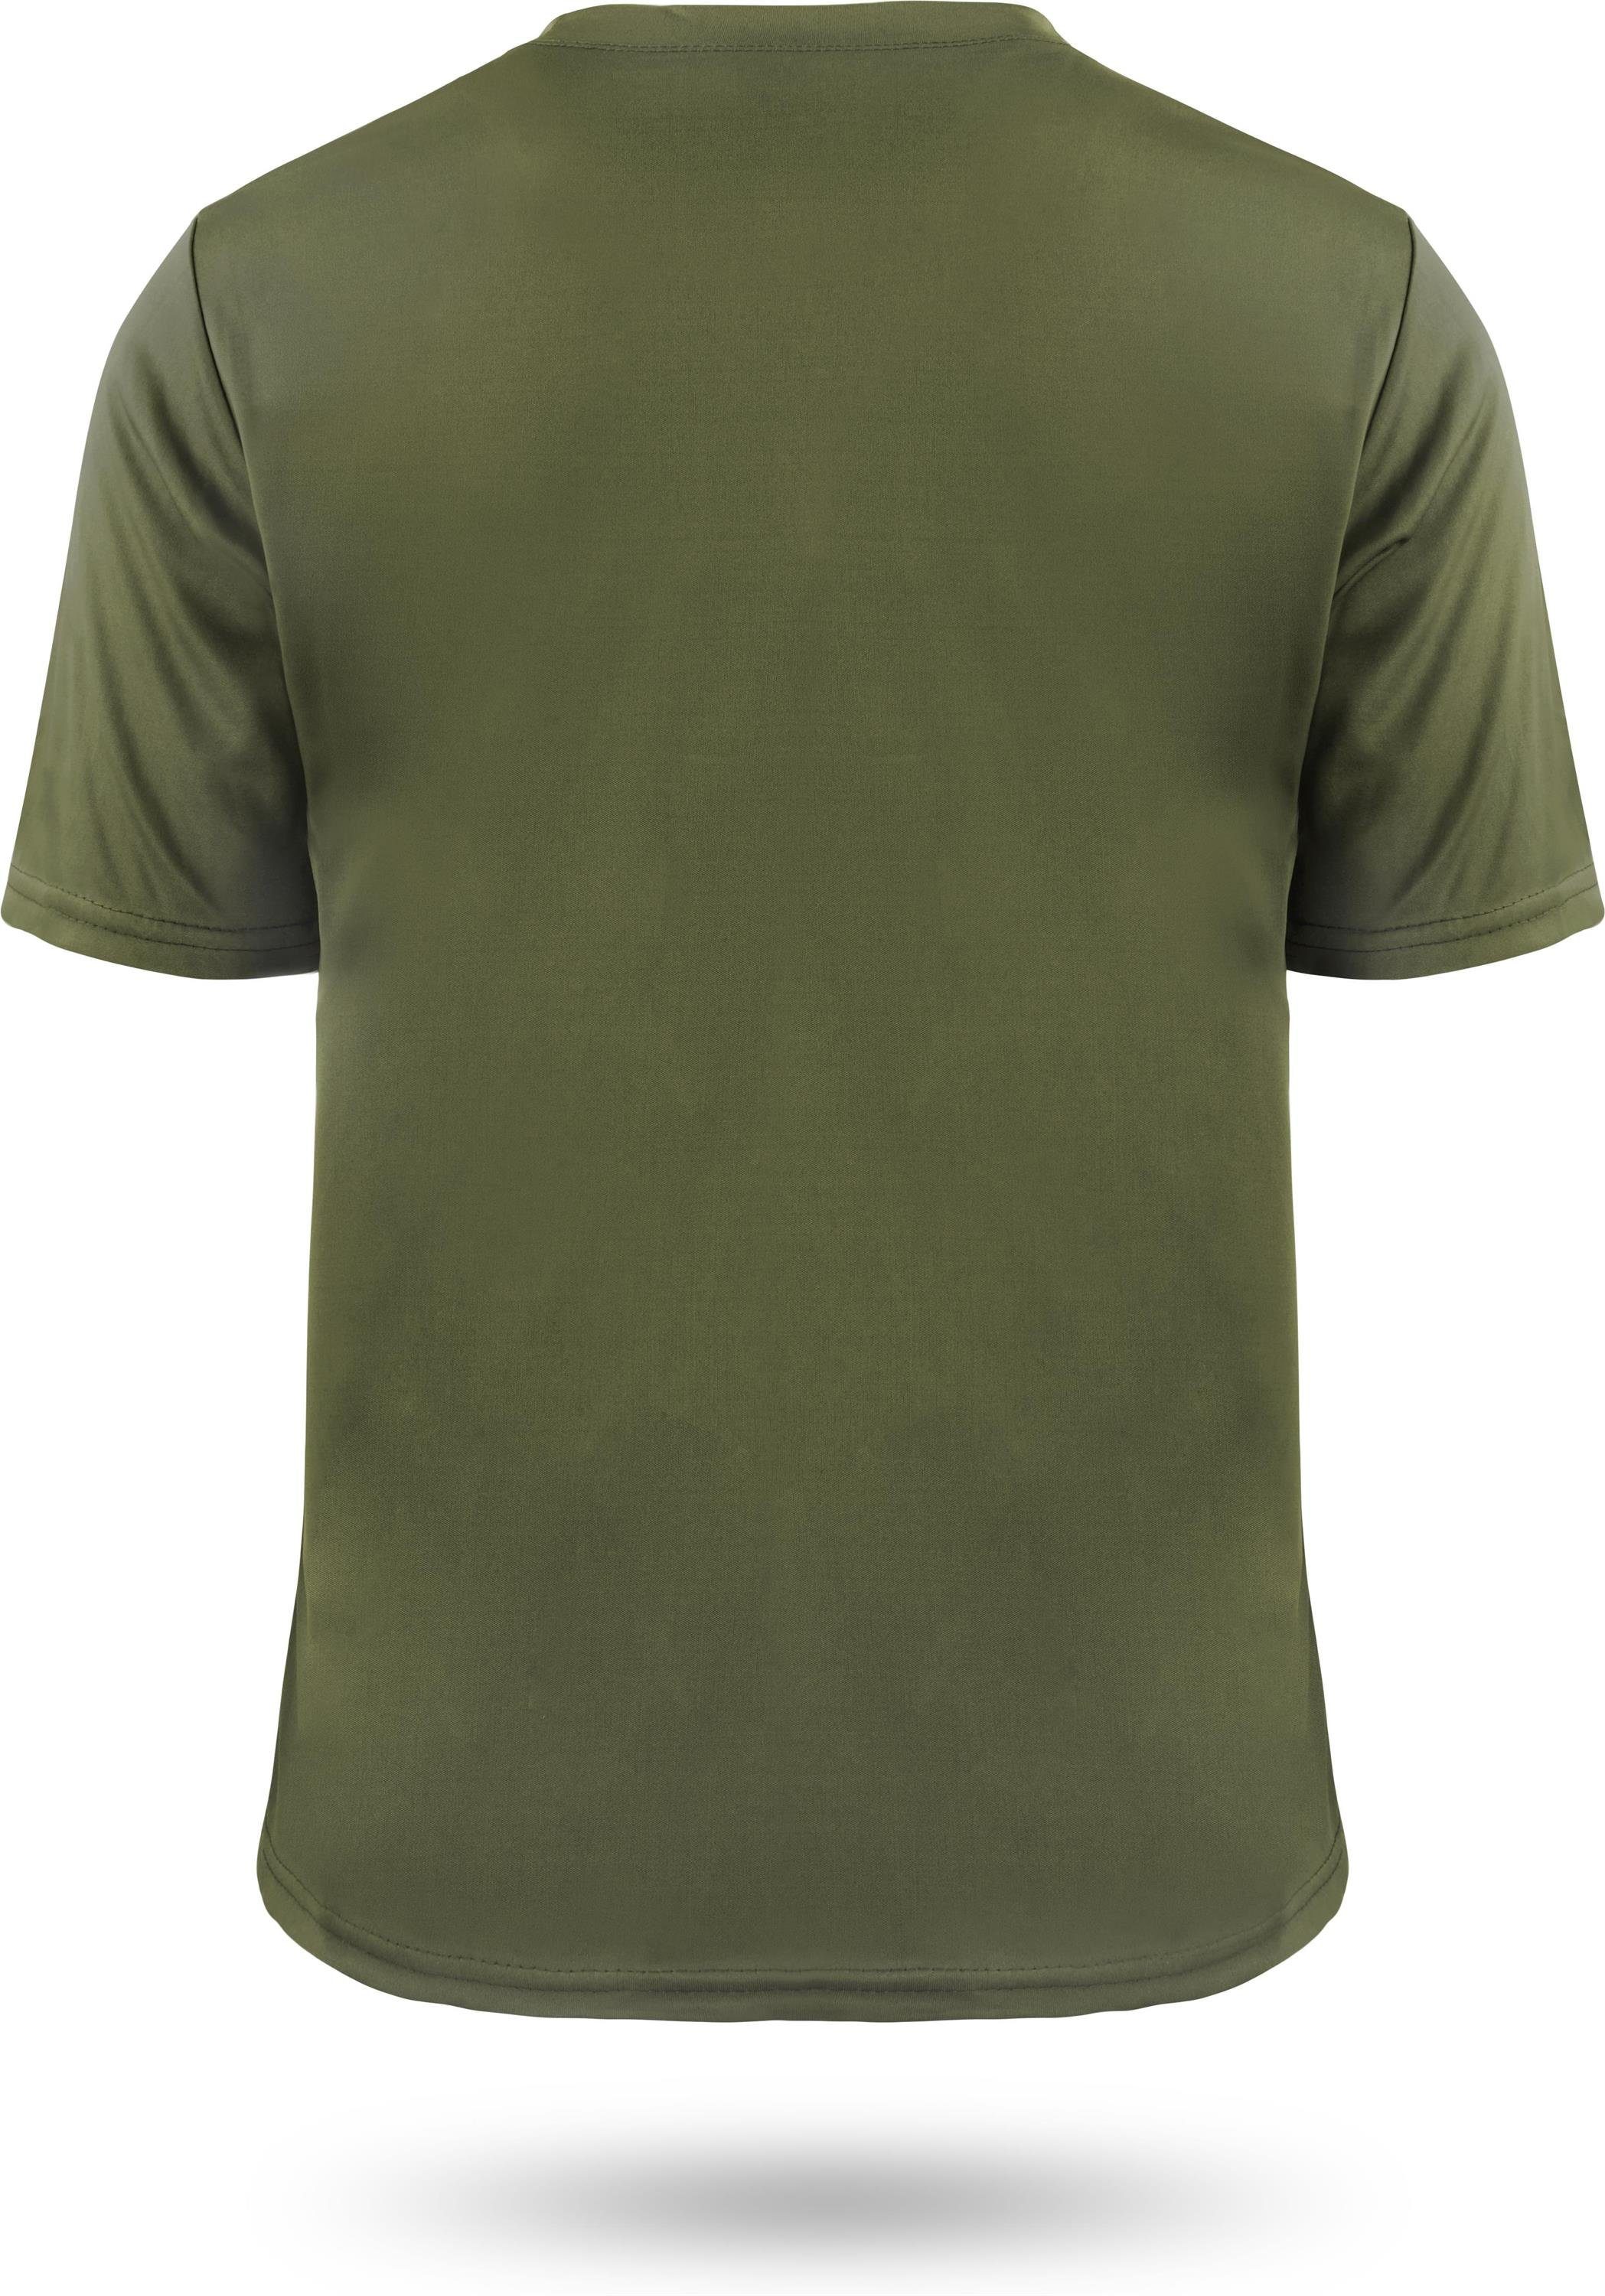 Shirt Funktions-Sport Grün Sportswear normani Herren Fitness Agra Kurzarm Funktionsshirt Cooling-Material mt T-Shirt